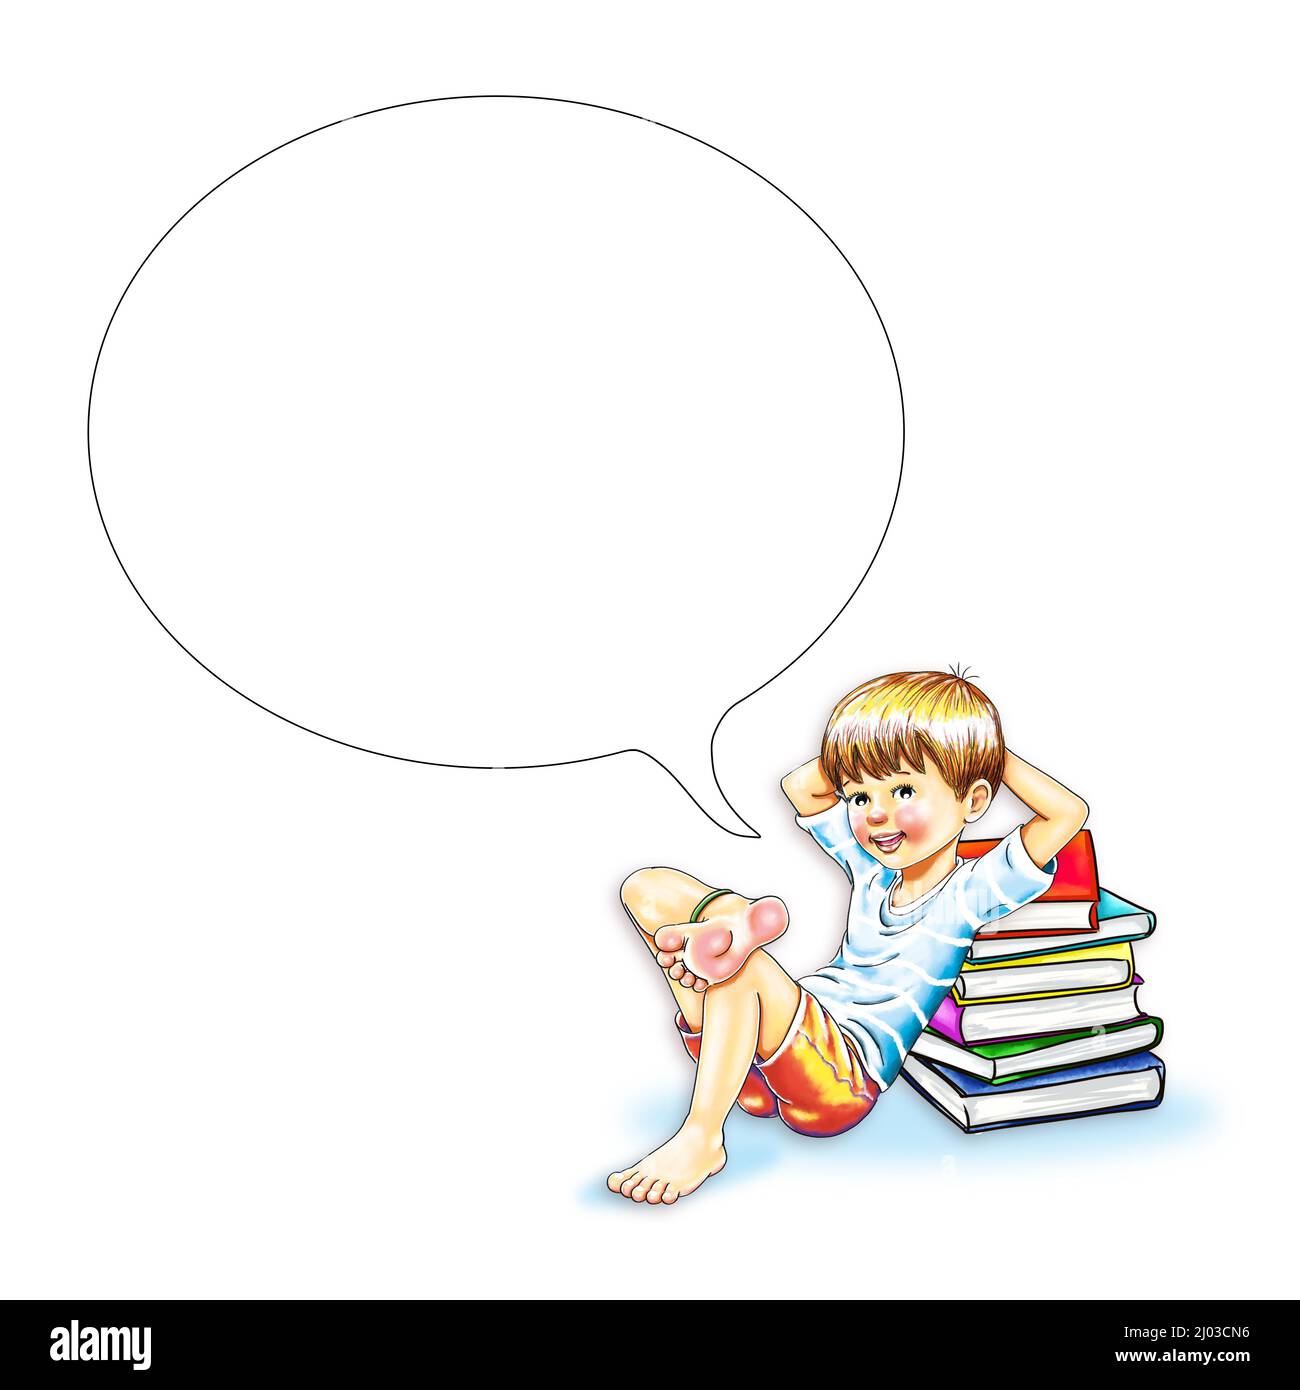 Boy sitzt barfuß friedlich lächelt entspannt auf Stapel von Büchern bequem gelehnt. Schüler Student Hände kreuzten hinter seinem Kopf Sprechblase freien Raum Stockfoto